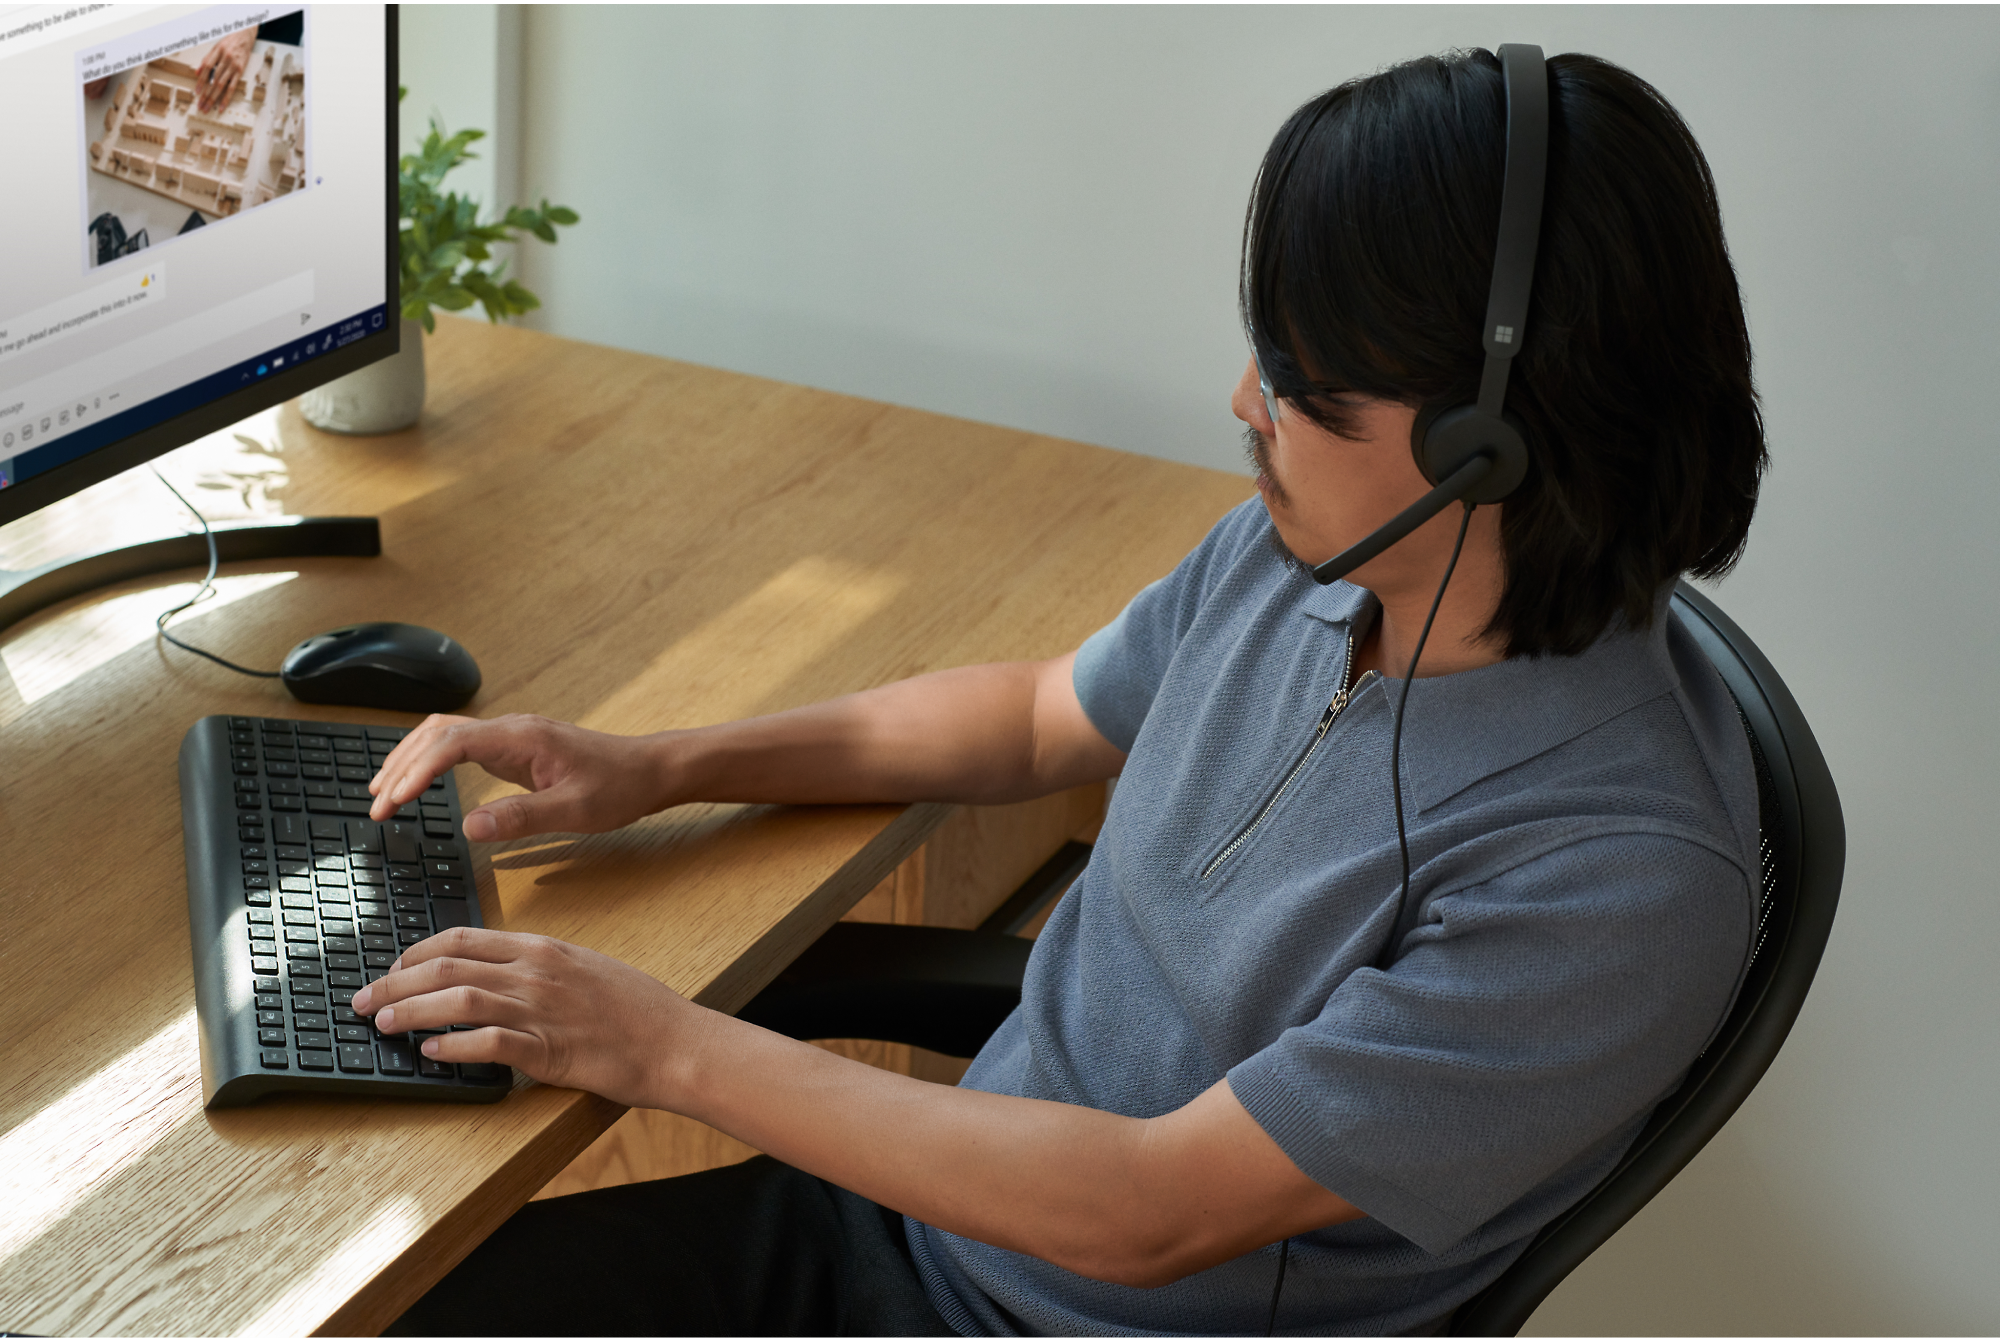 Eine Person, die ein Headset trägt, sitzt an einem Schreibtisch, tippt auf eine Tastatur und blickt auf einen Computerbildschirm.